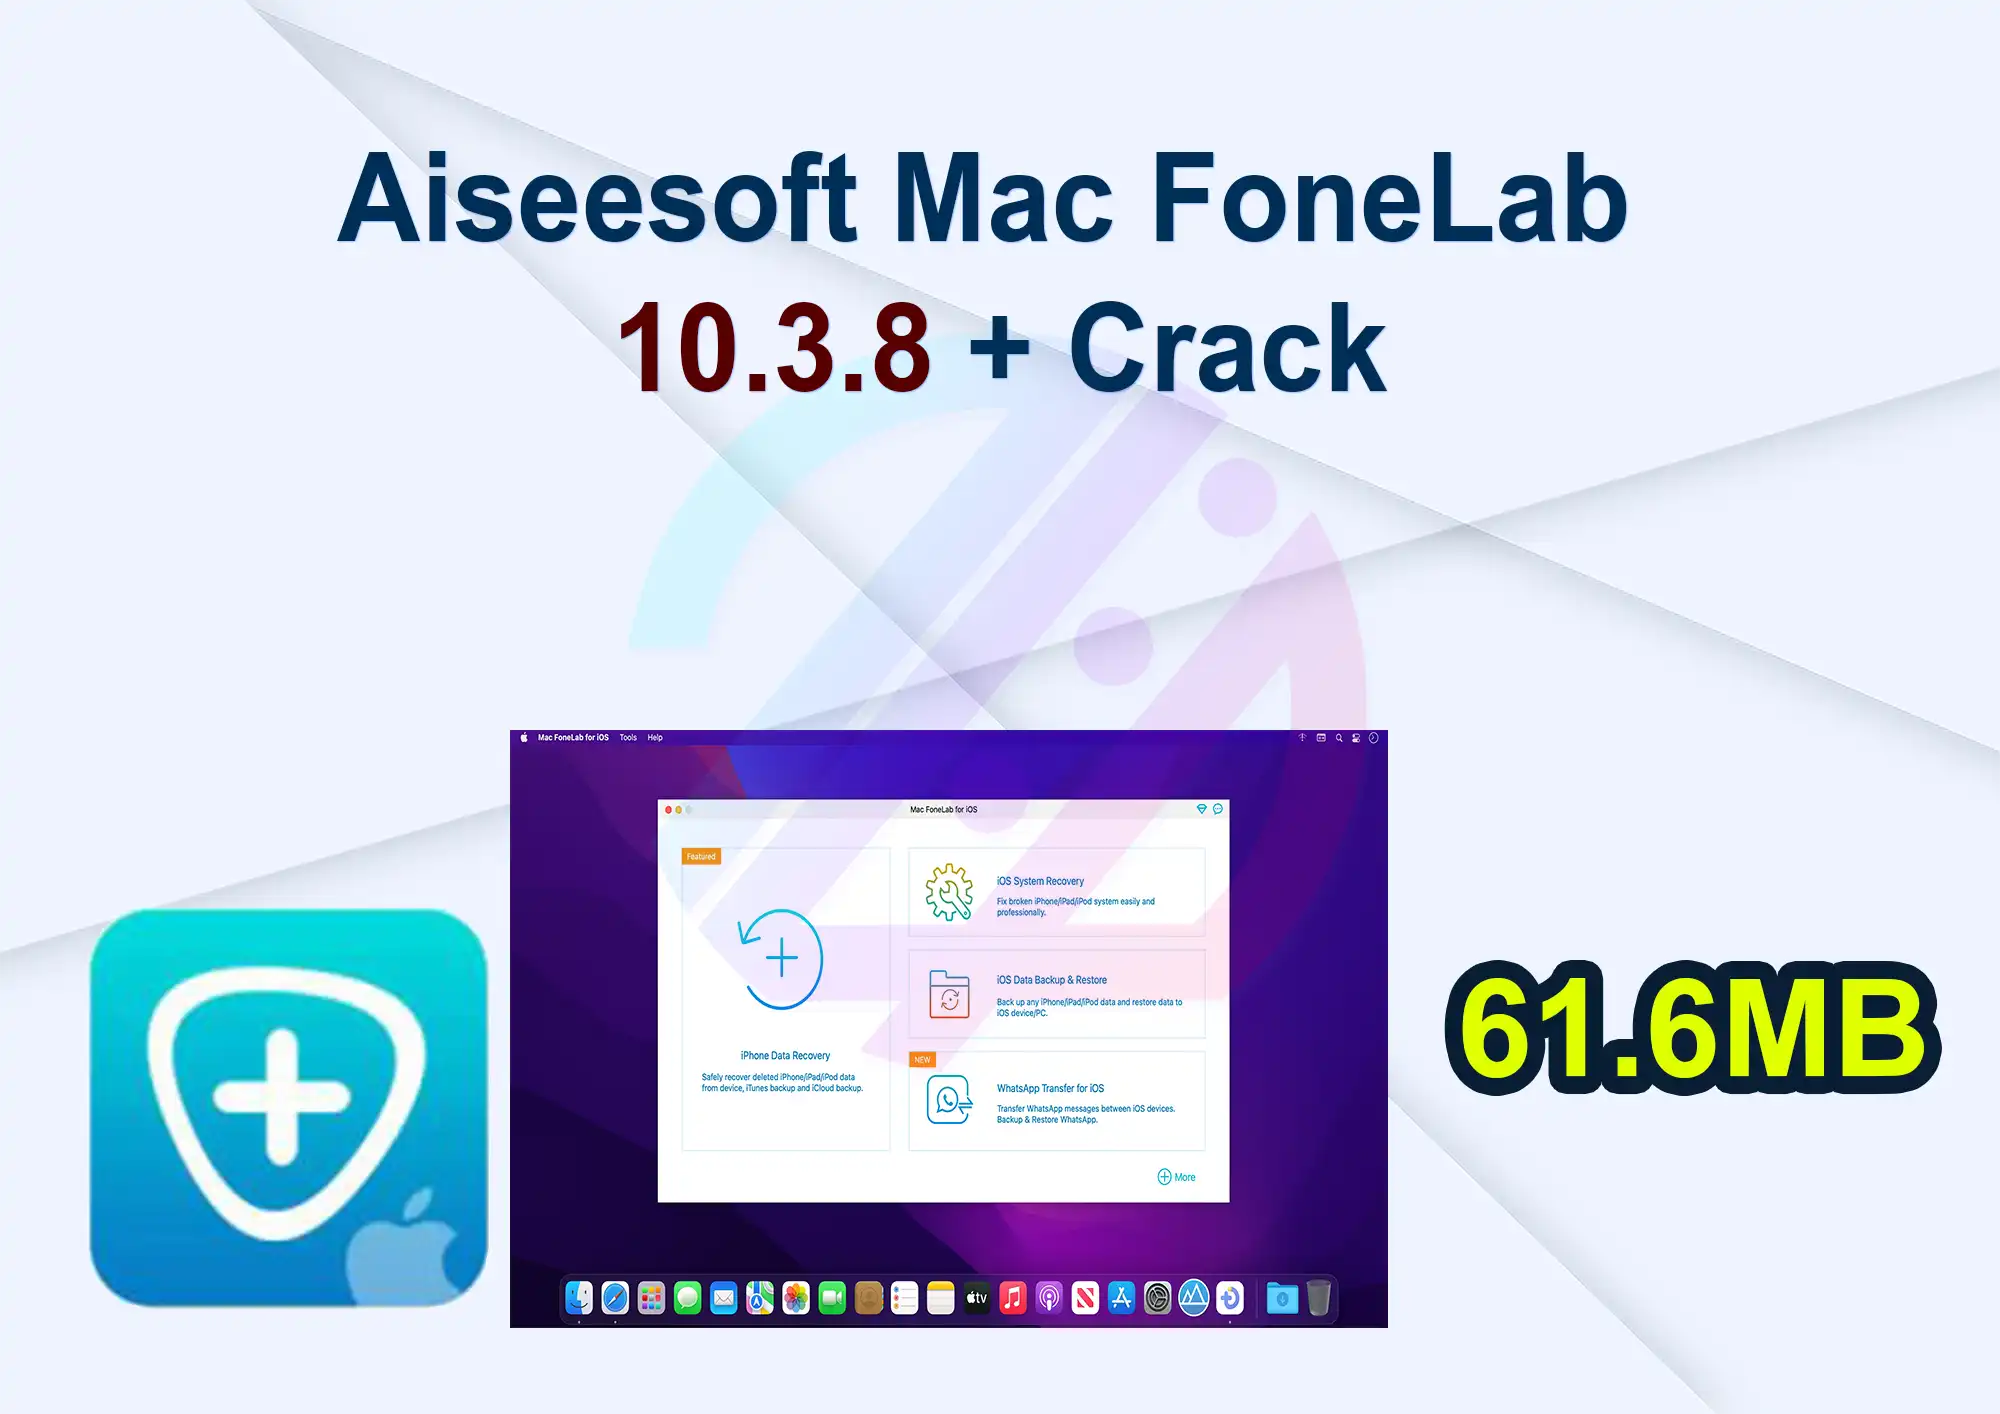 Aiseesoft Mac FoneLab 10.3.8 + Crack